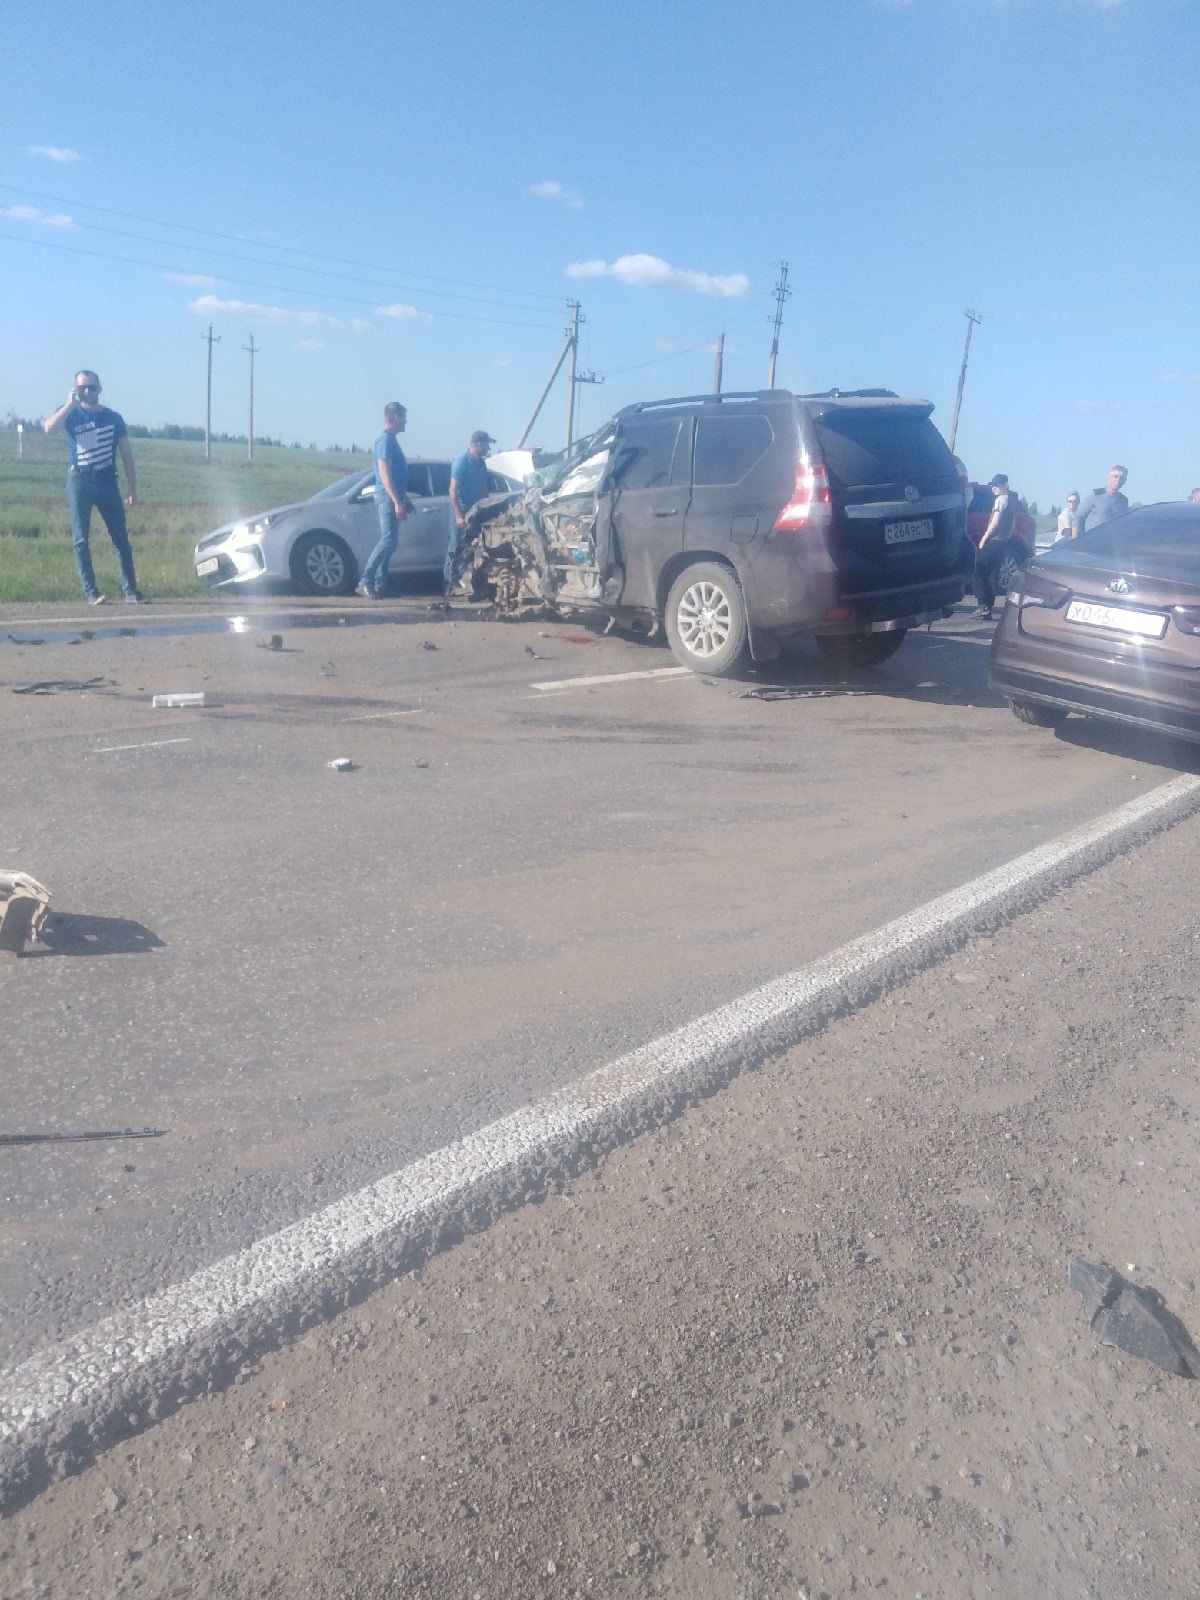 

Один человек погиб в результате ДТП с участием грузовика на трассе Завьялово-Сарапул

